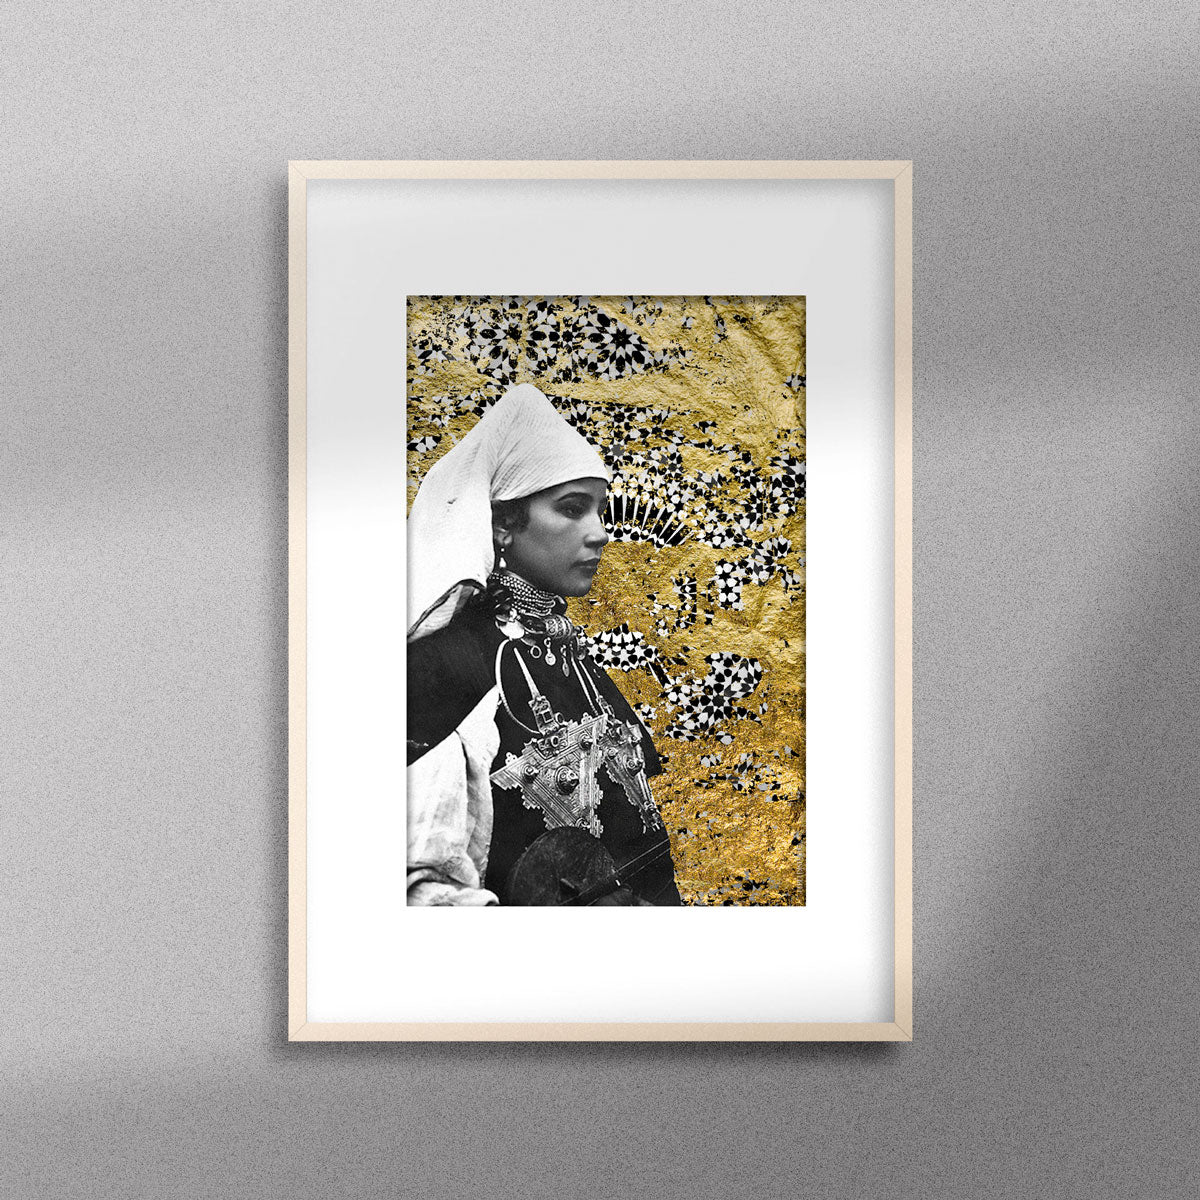 Tableau décoratif représentant un portrait d'une femme amazighe portant la fibule sur un fond de zellige marocain avec des feuilles d'or, encadré dans un cadre en bois - Format A3.